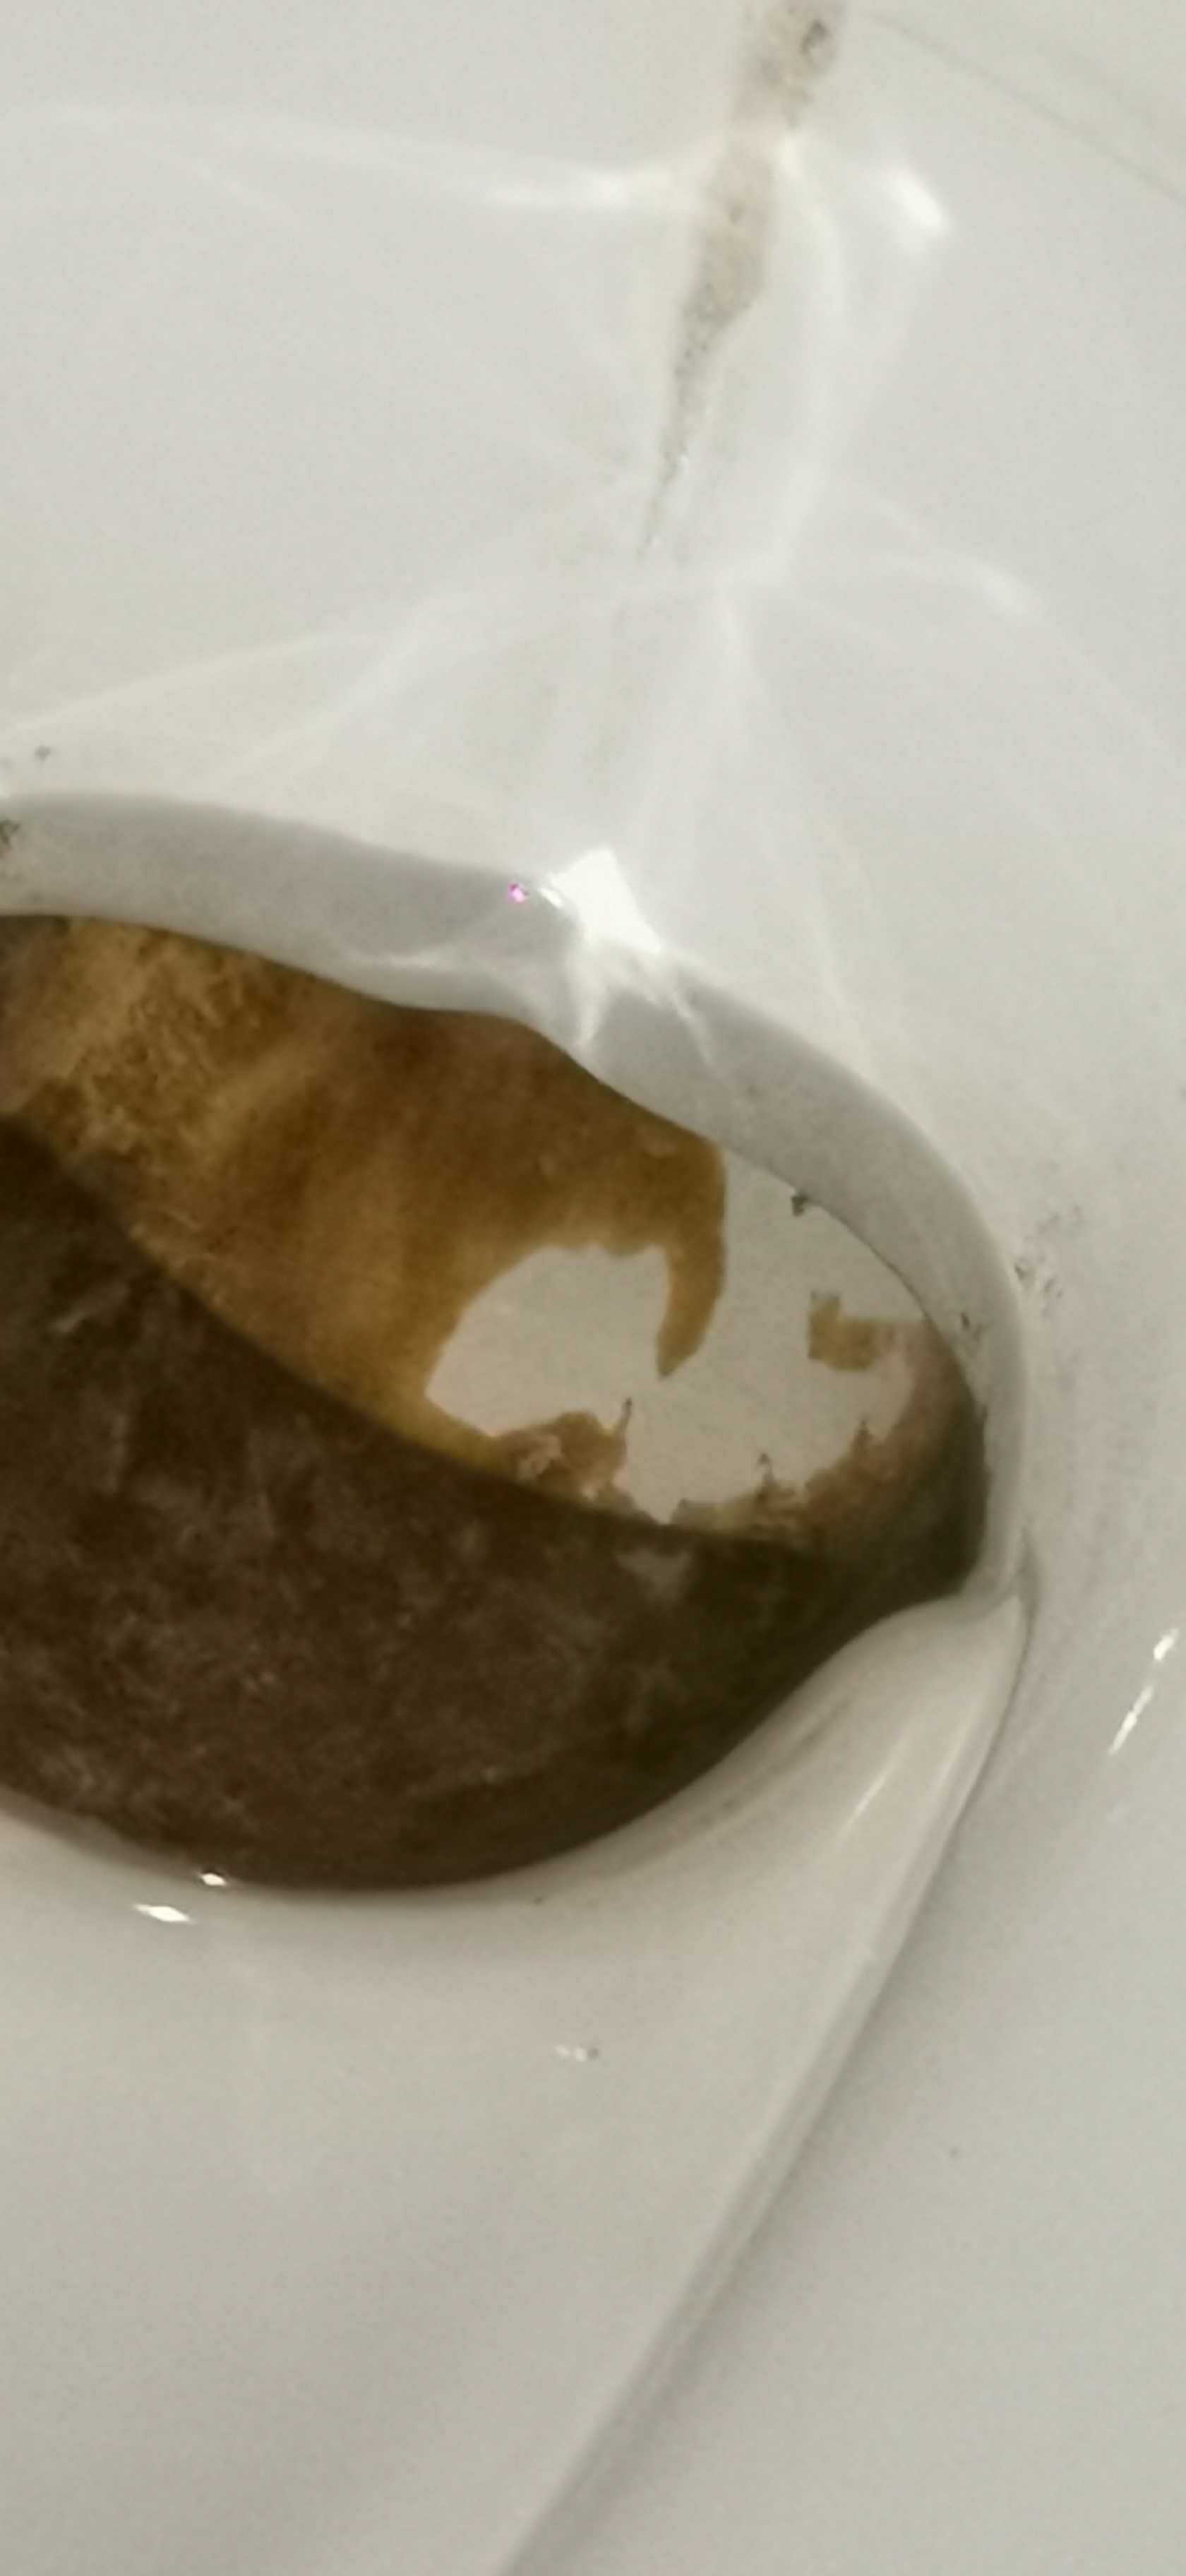 Vase de toilette sanitaire marqué par le calcaire